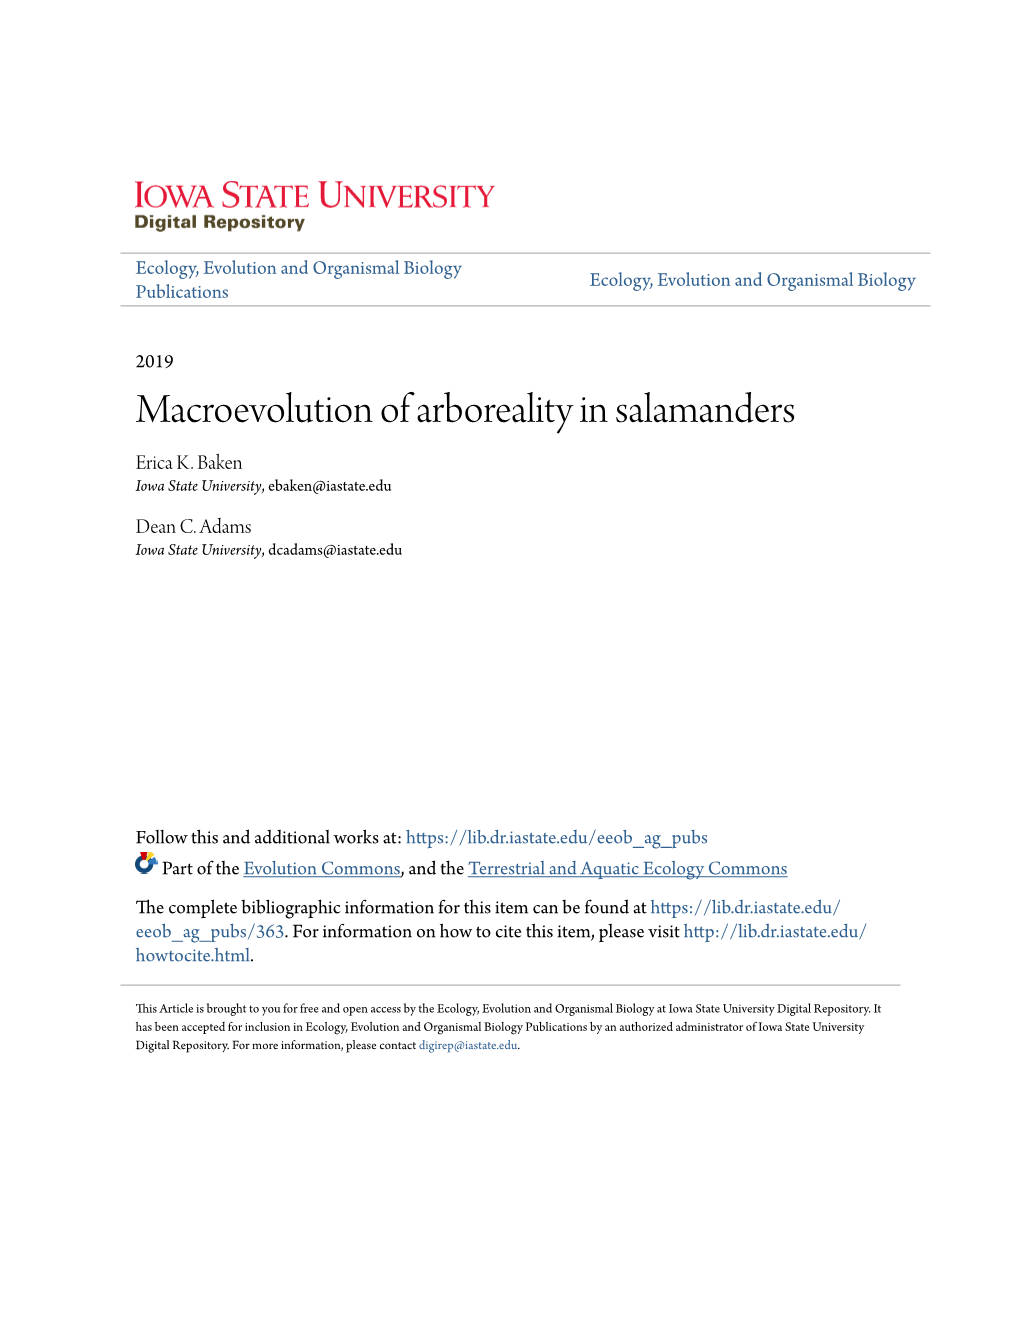 Macroevolution of Arboreality in Salamanders Erica K